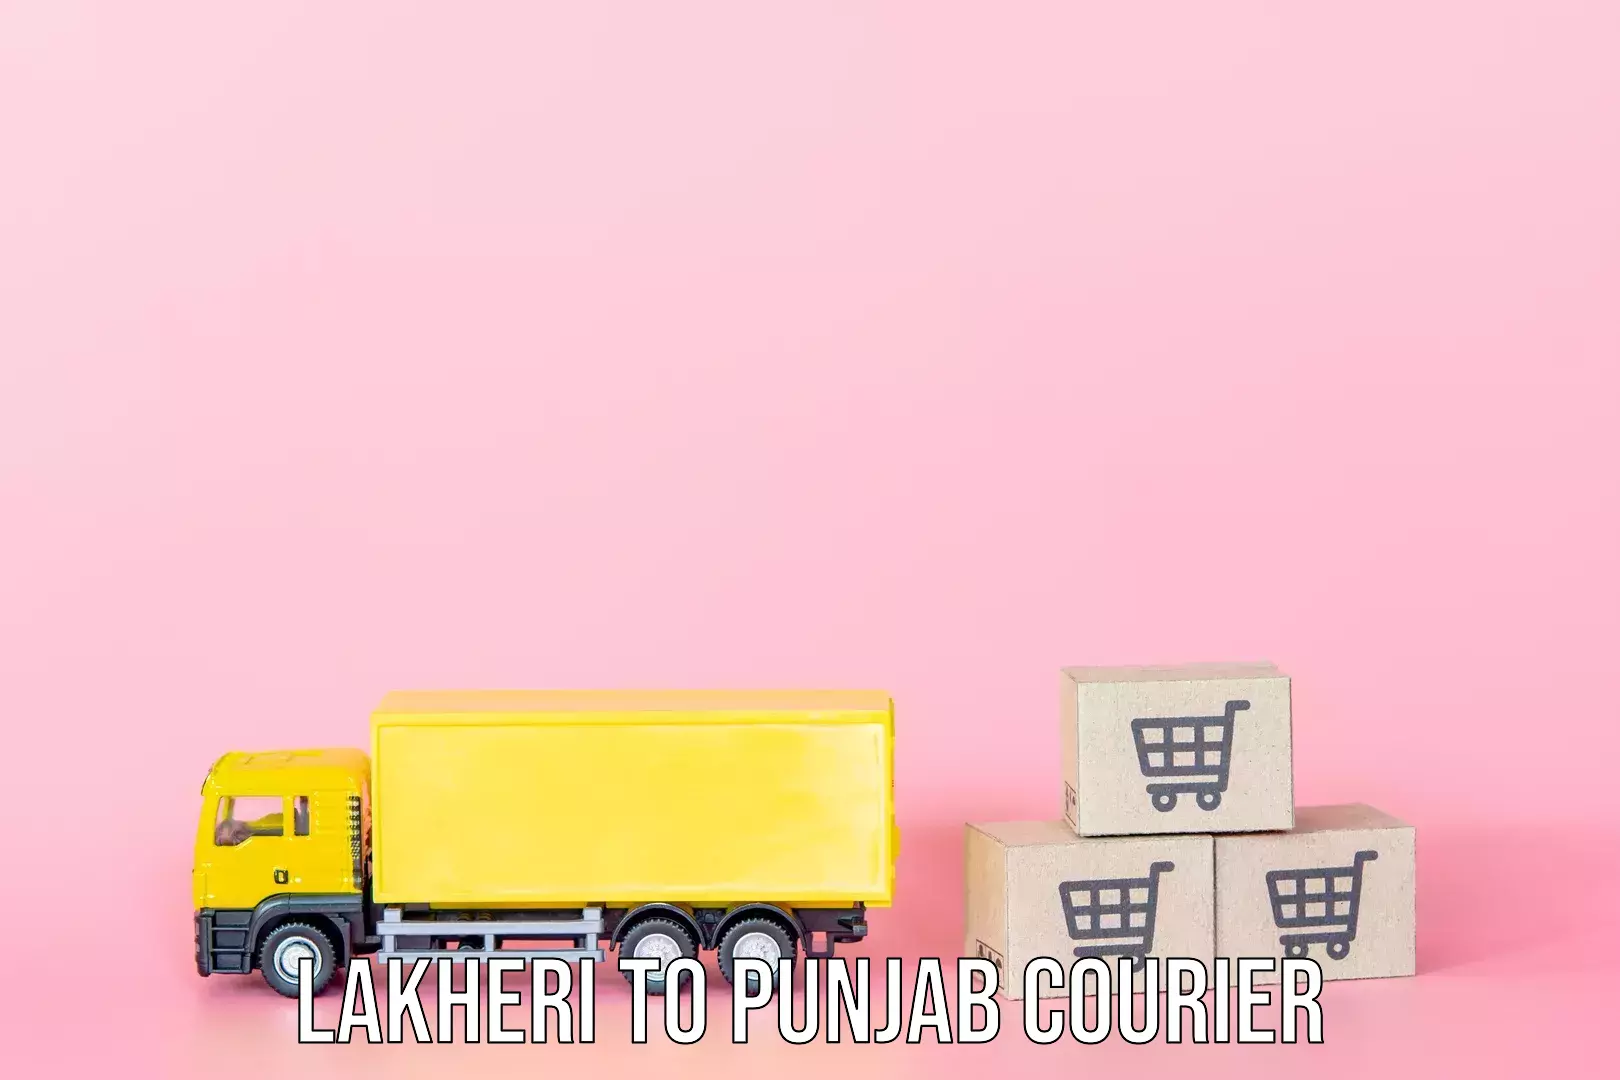 Luggage forwarding service Lakheri to Punjab